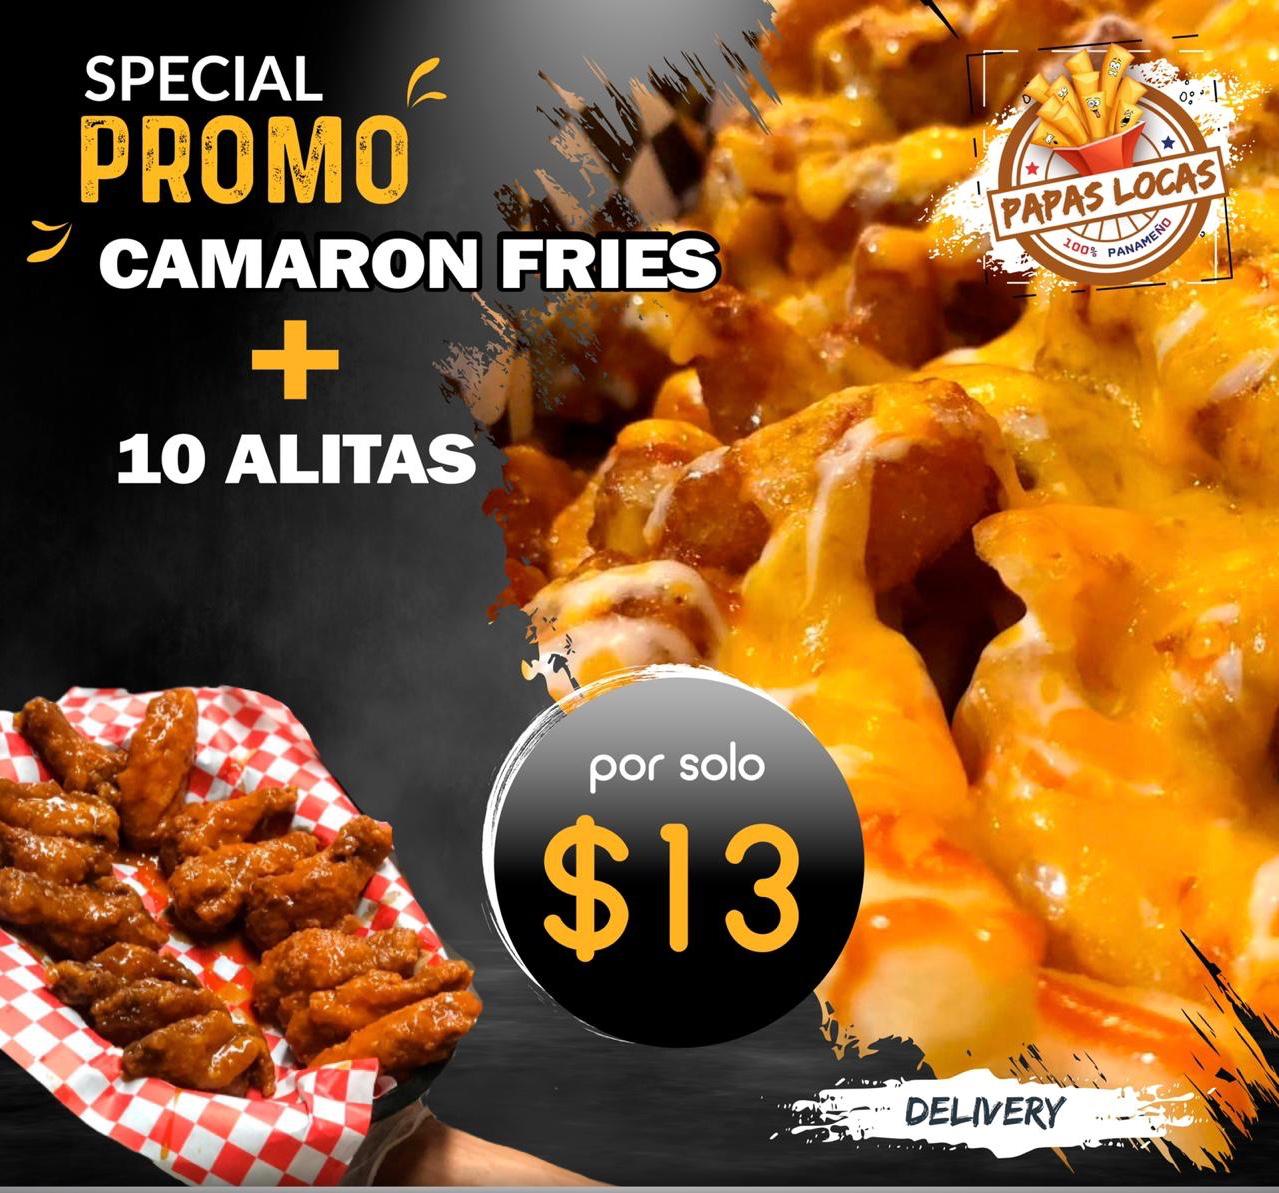 Solo los Jueves* Special promo Camaron fries + 10 alitas | Papas Locas